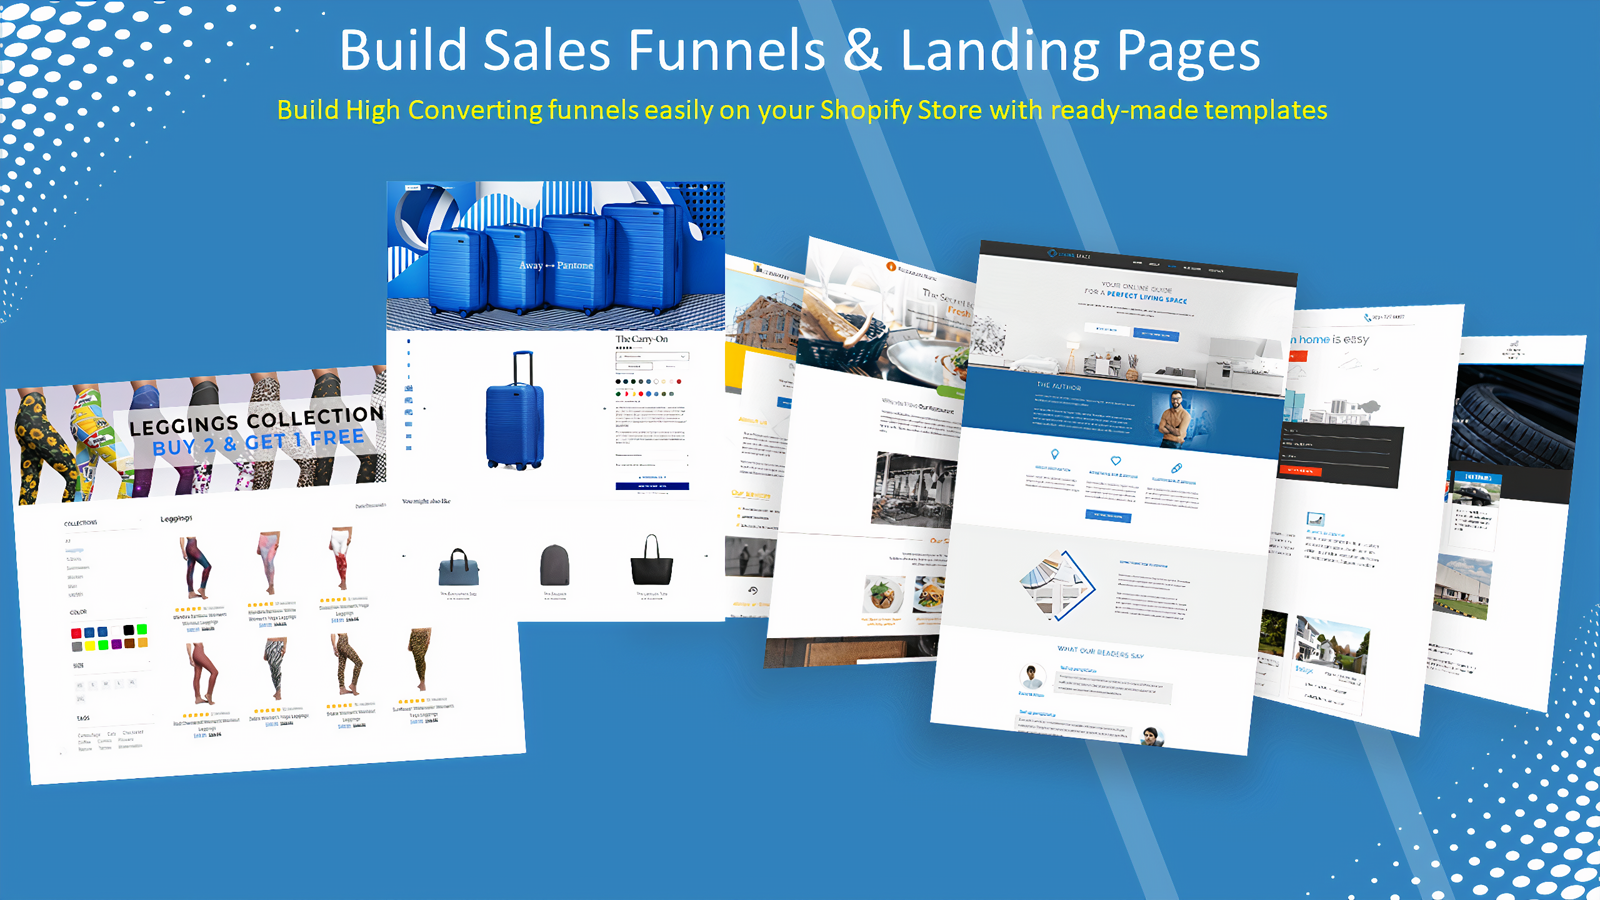 Build Sales Funnels & Landing Pages